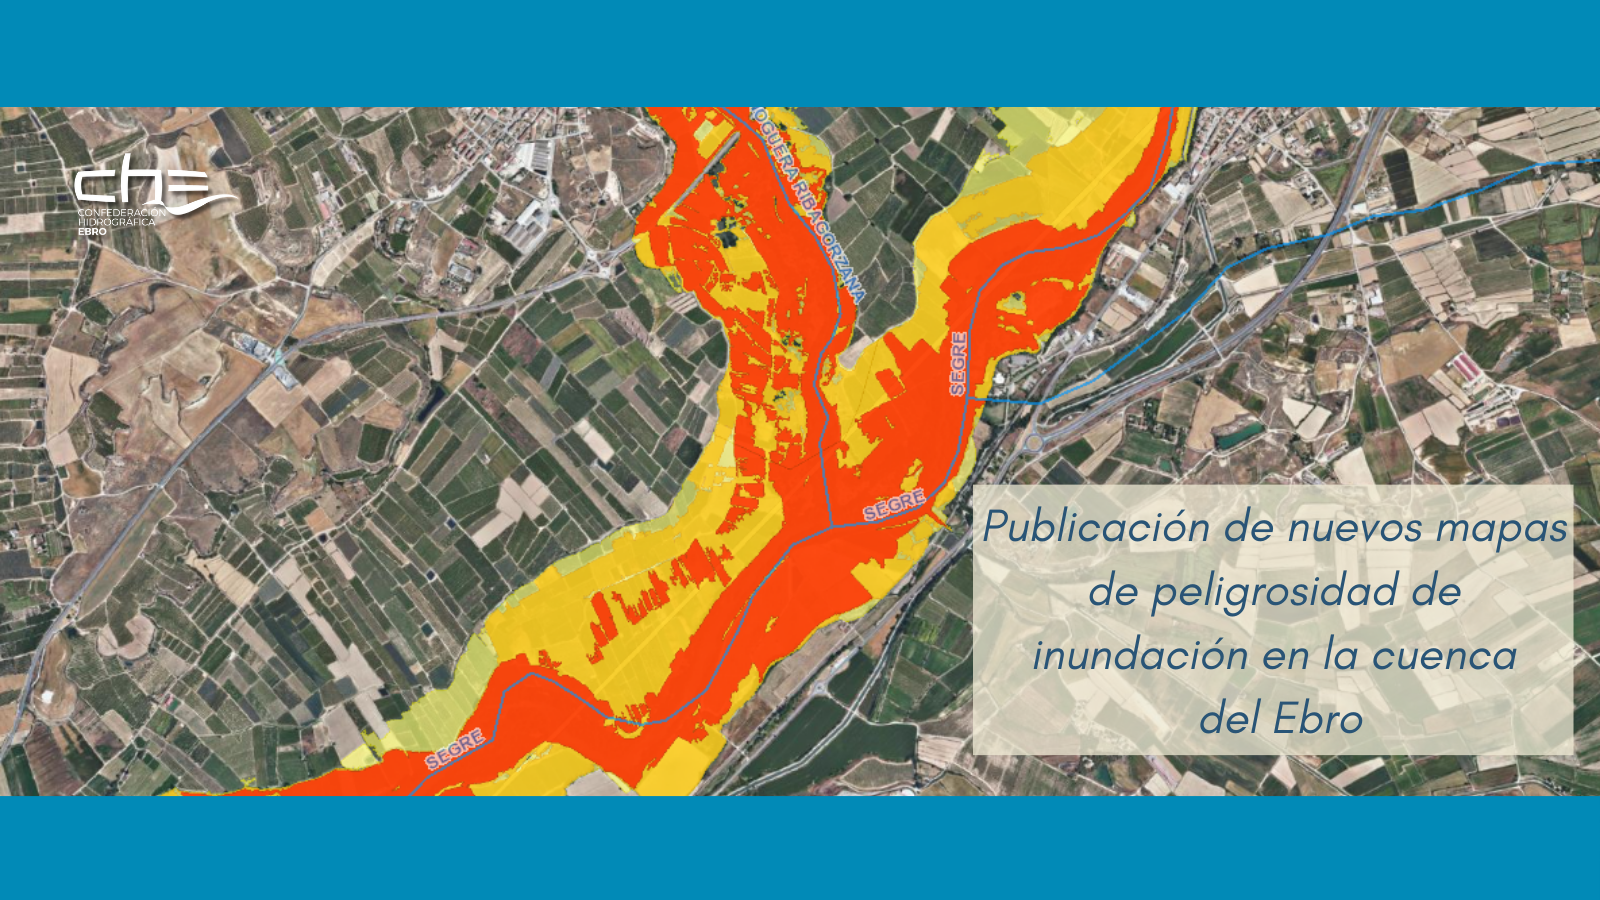 Publicación de nuevos mapas de peligrosidad de inundación en la cuenca del Ebro